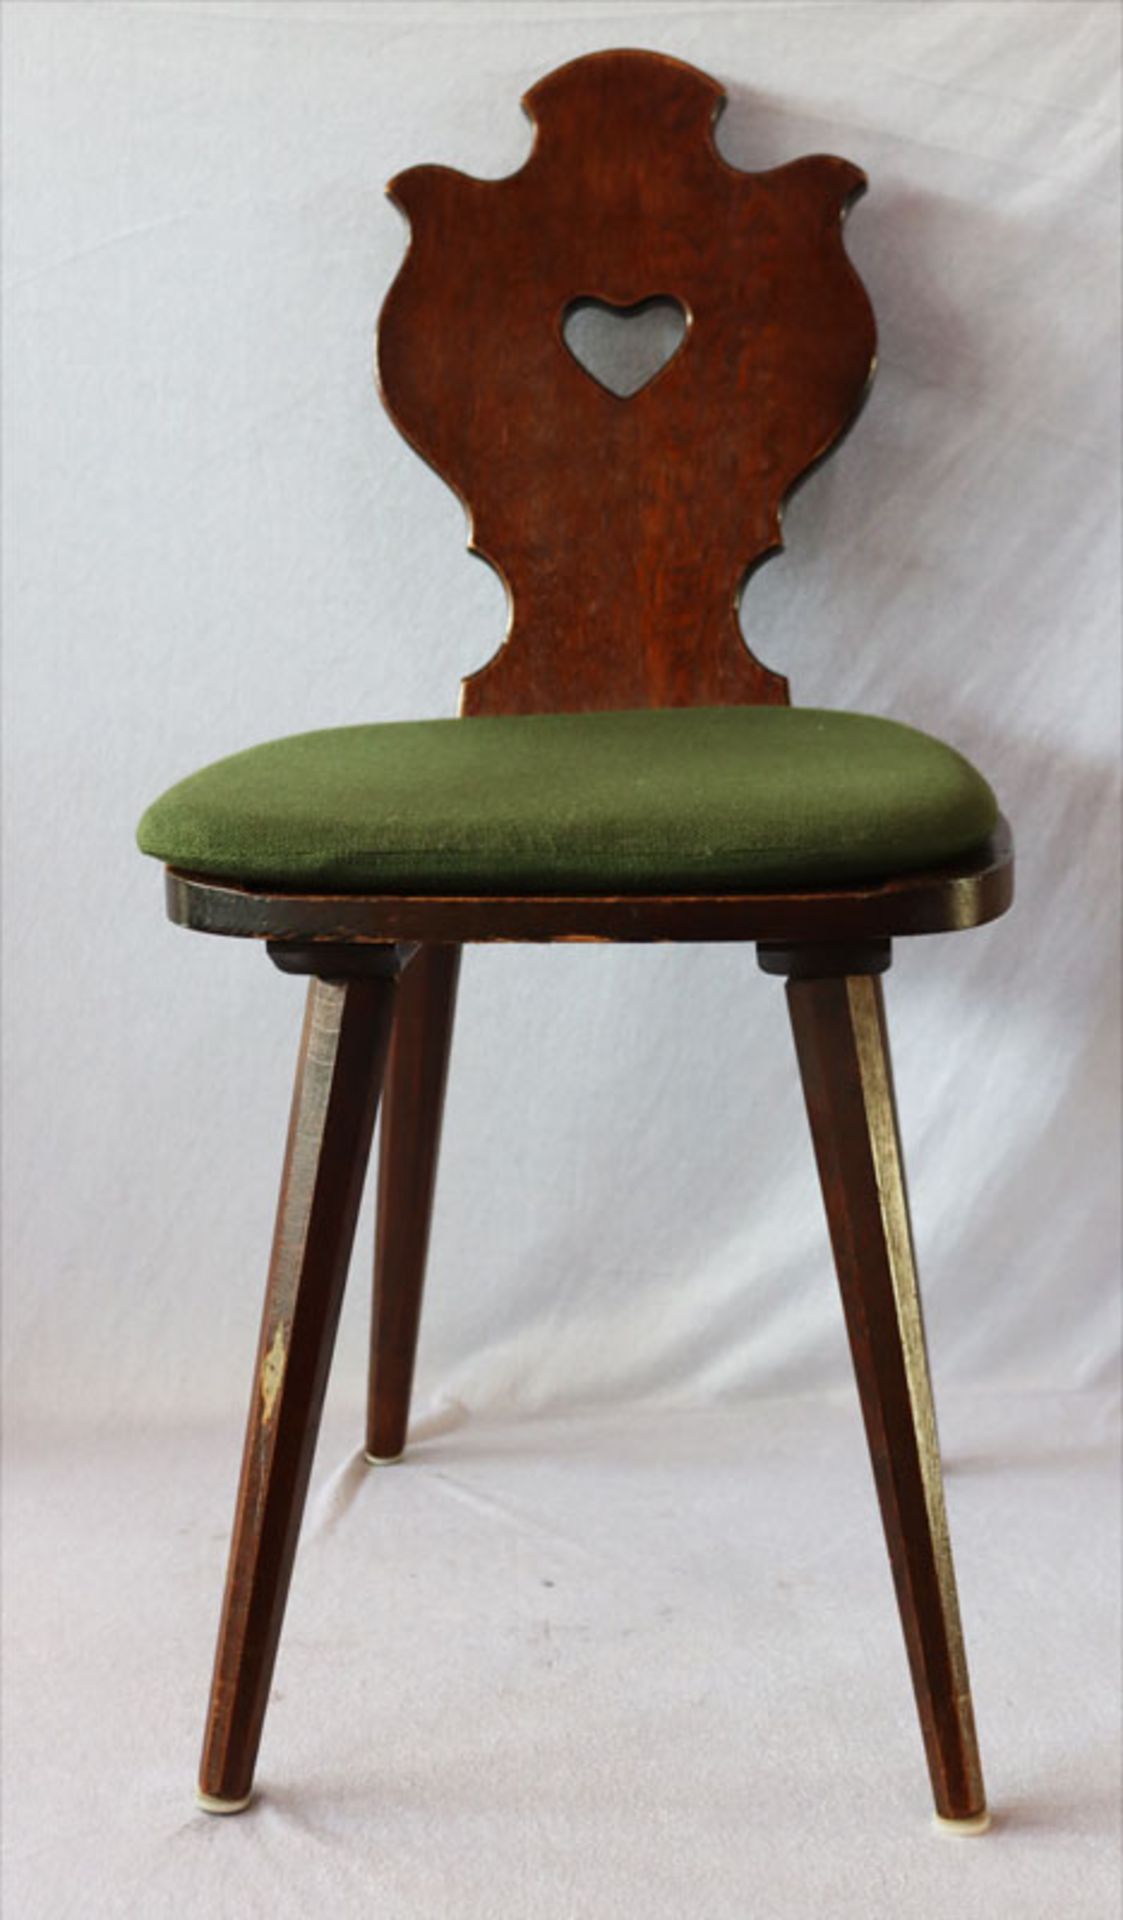 2 Holzstühle mit losen Sitzkissen, H 88 cm, B 43 cm, T 40 cm, lt. Einlieferer vom Hoflieferant König